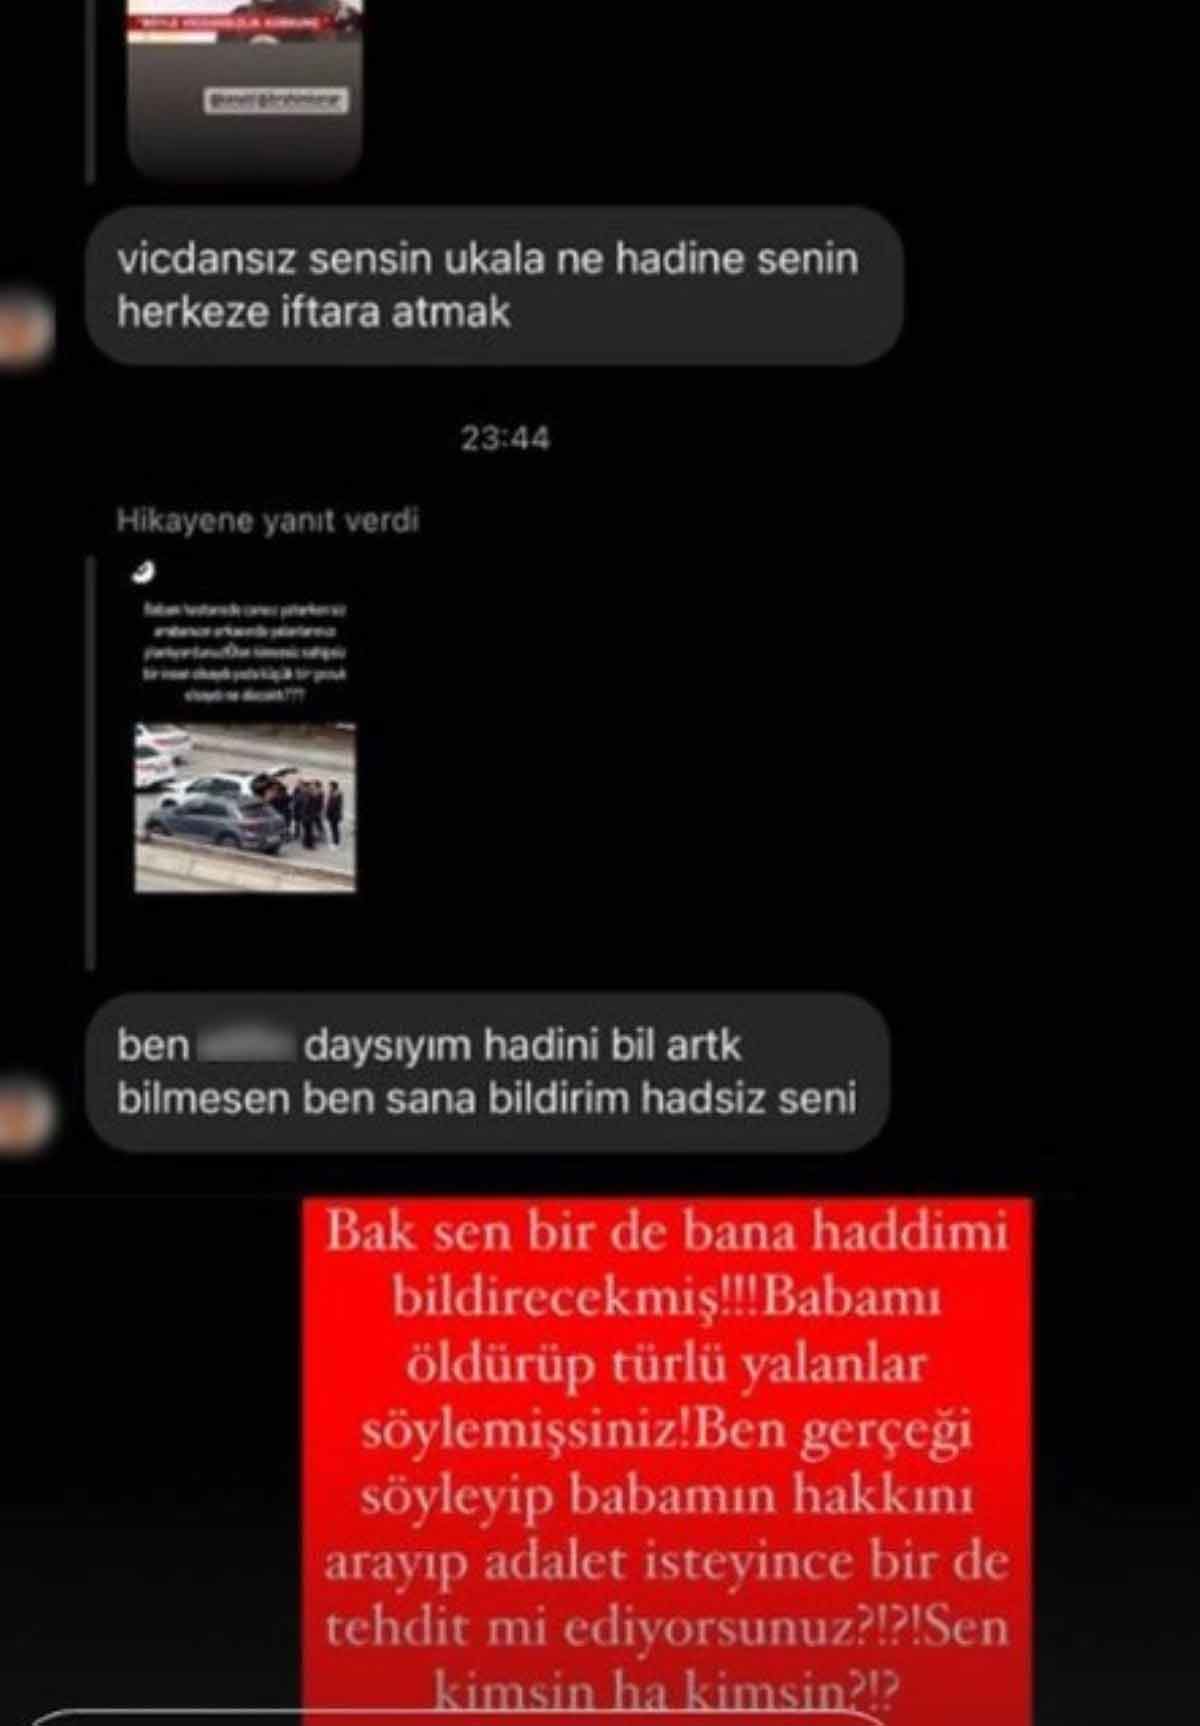 “Kaza değil, cinayet” demişti: Babasını kaybeden Özge Ulusoy’a tehdit!